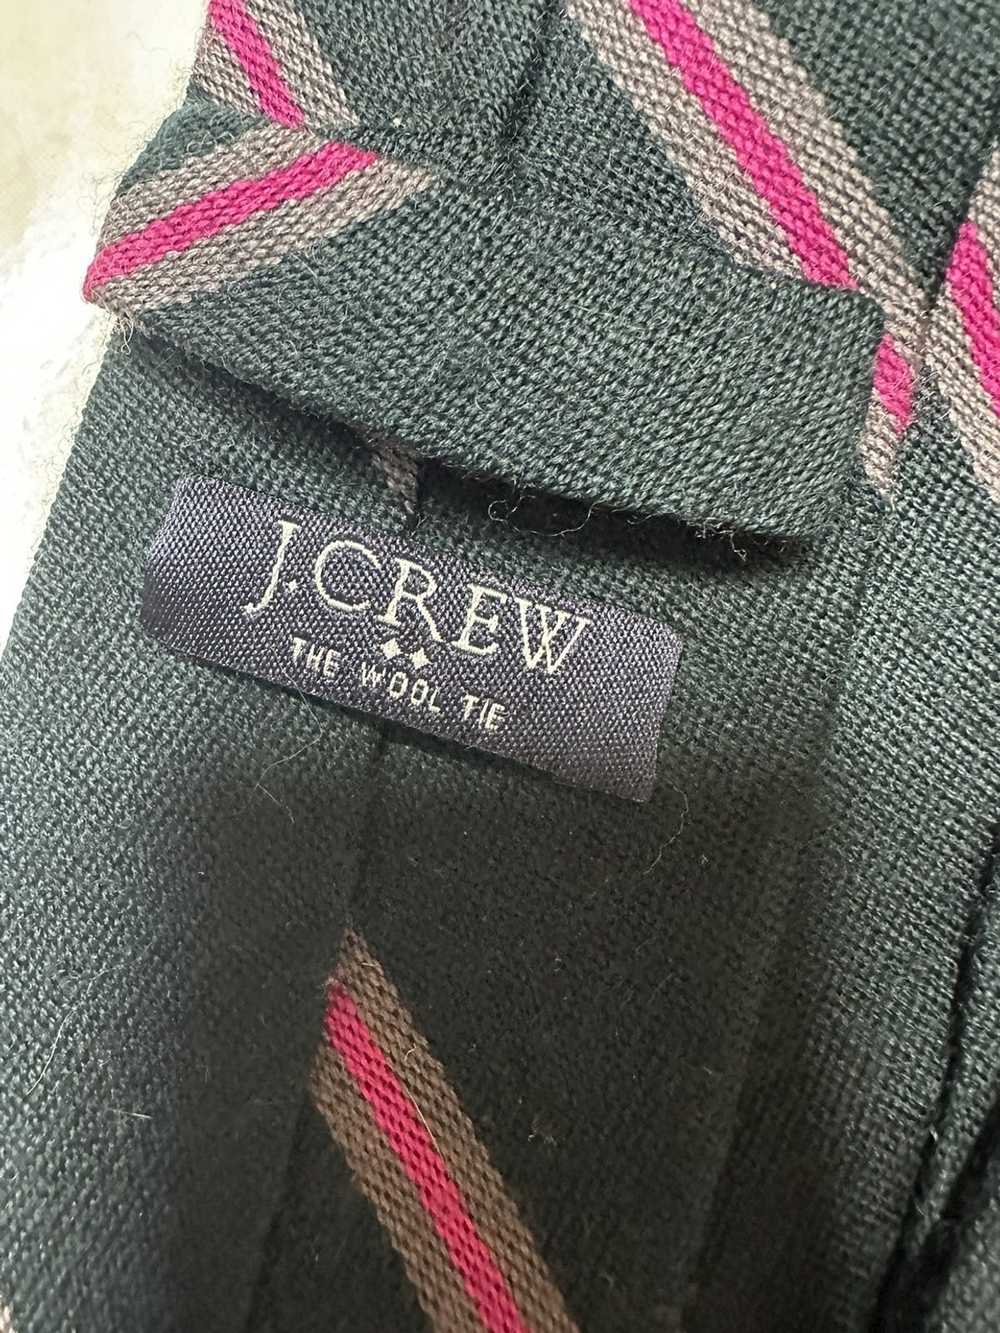 J.Crew 100% Wool tie by Jcrew - image 5